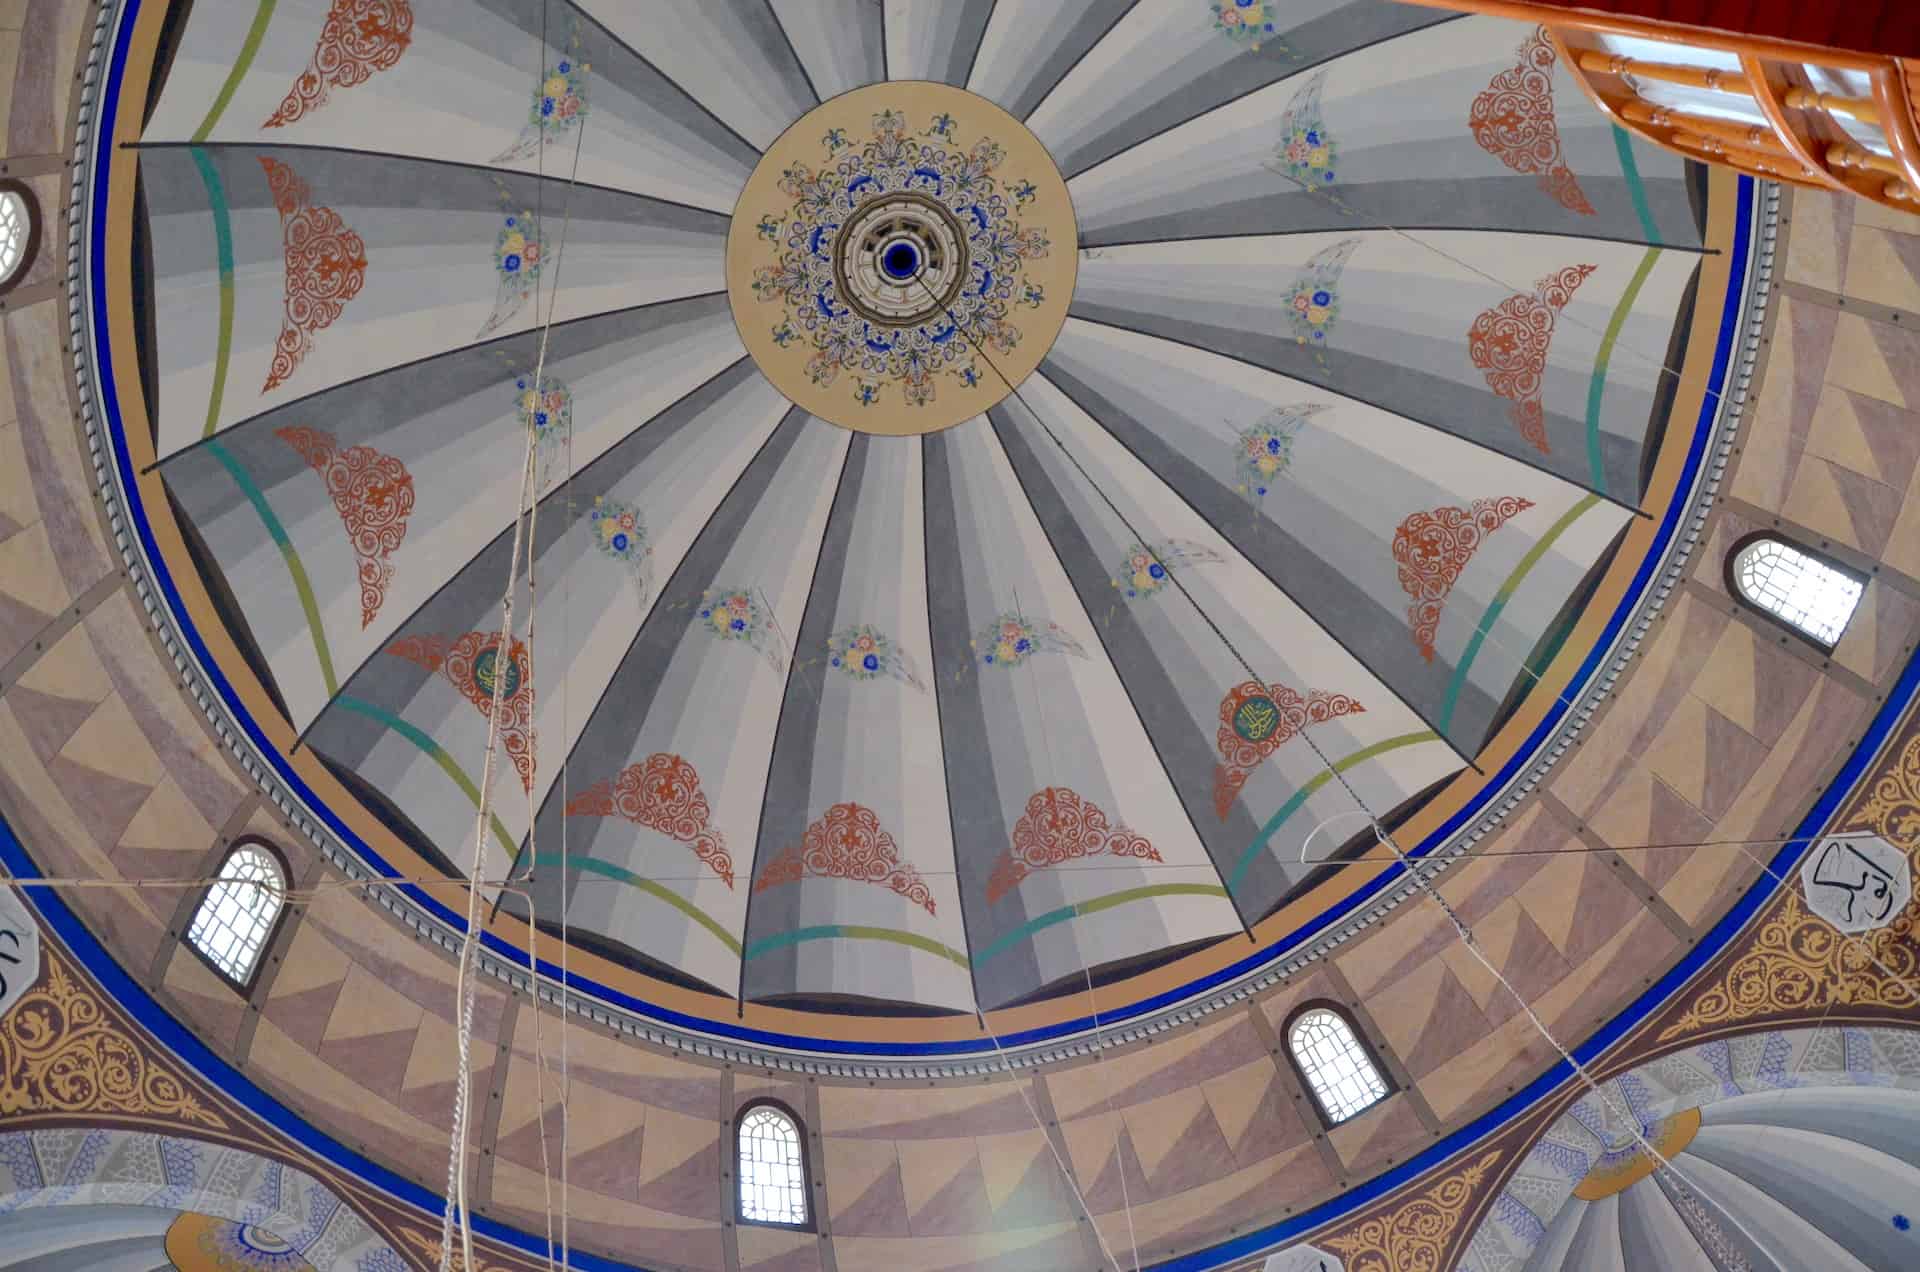 Dome of the Köprülü Mehmed Pasha Mosque in Safranbolu, Turkey